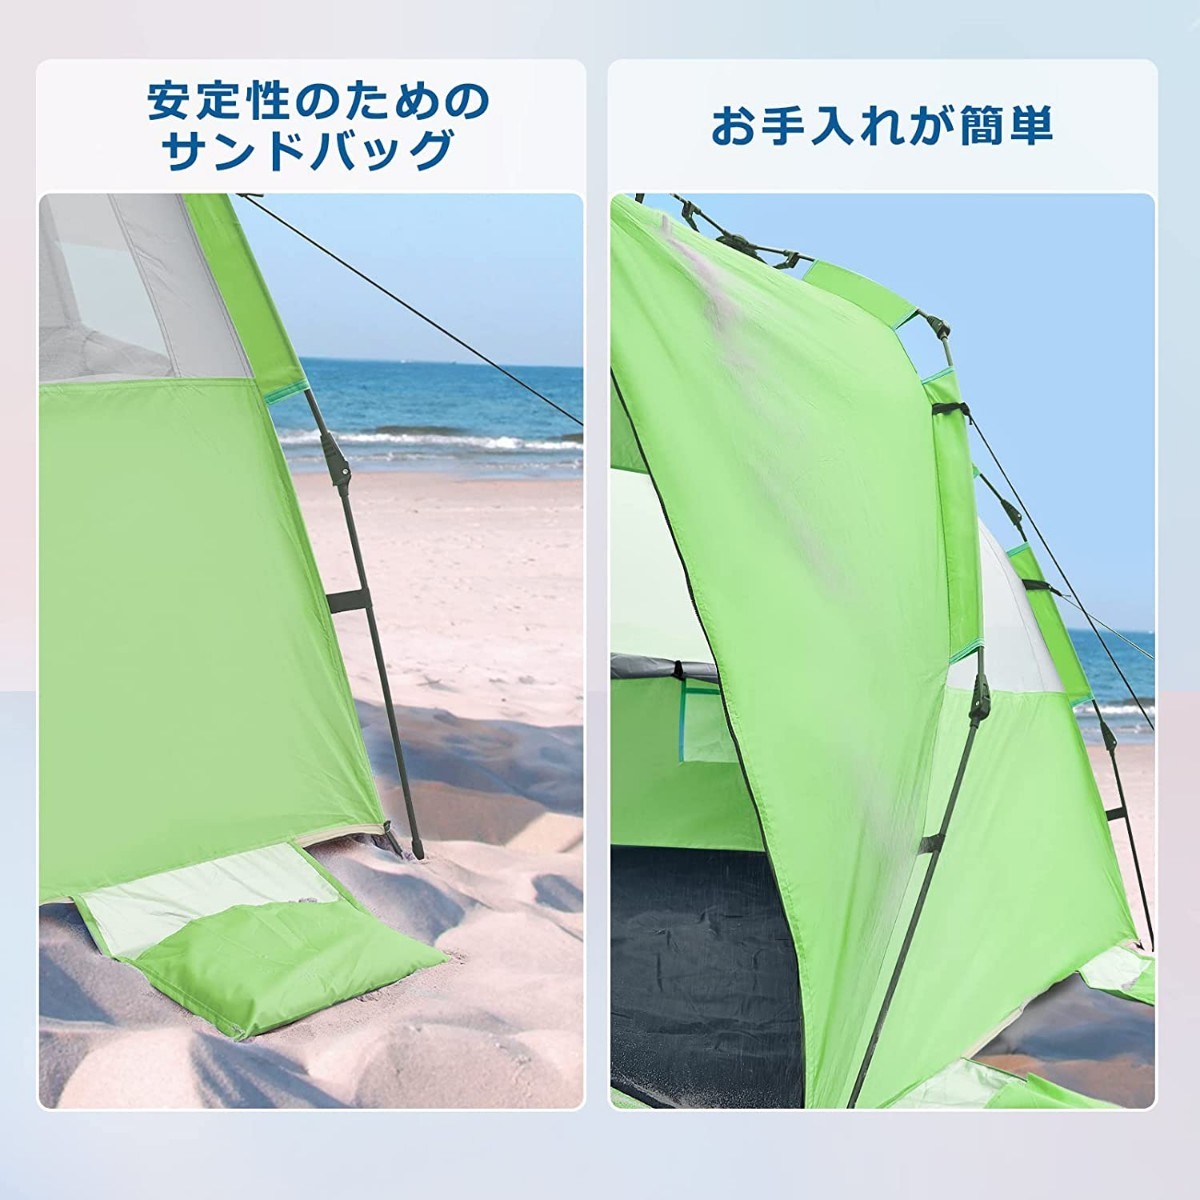 ABCCAMPING サンシェード テント ワンタッチ ビーチテント 4人用テント